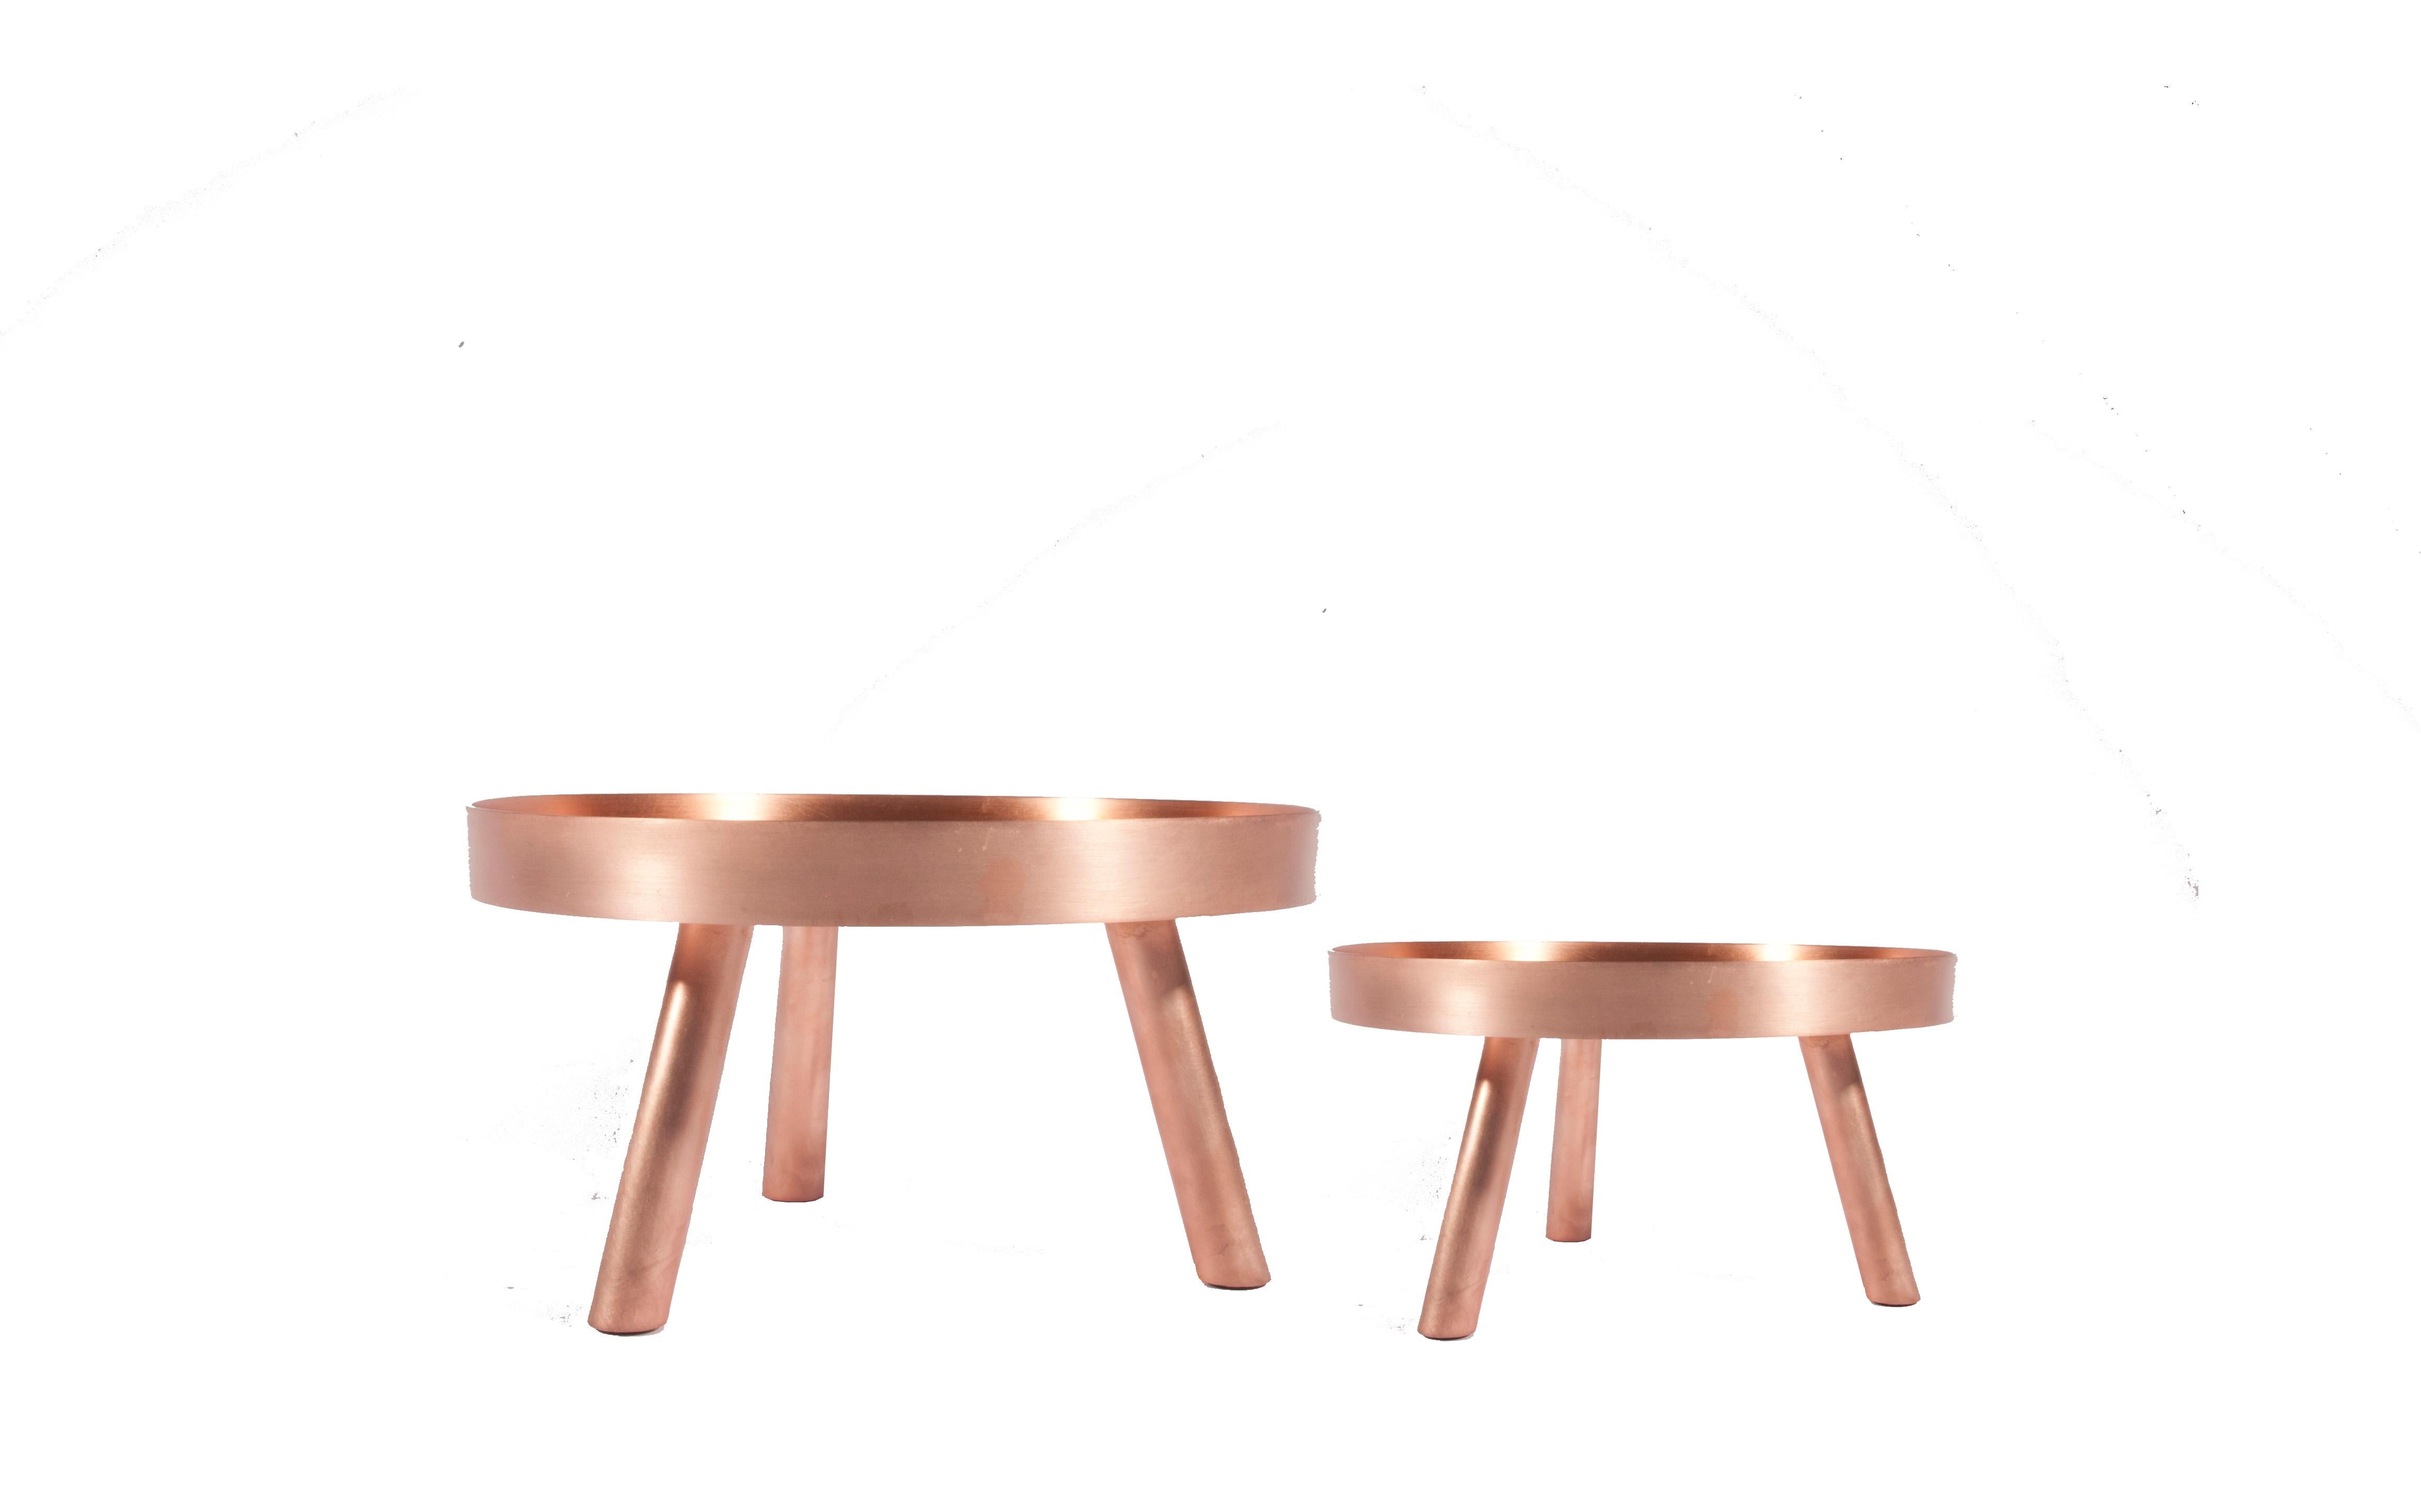 Dieses schlichte, elegante, minimalistische und zeitgenössische kleines Serviertablett aus Kupfer bringt einen ganz neuen Stil in Ihr Tischgedeck. Inspiriert vom Pantheon in Rom mit seinem mächtigen Oculus und der starken, minimalistischen